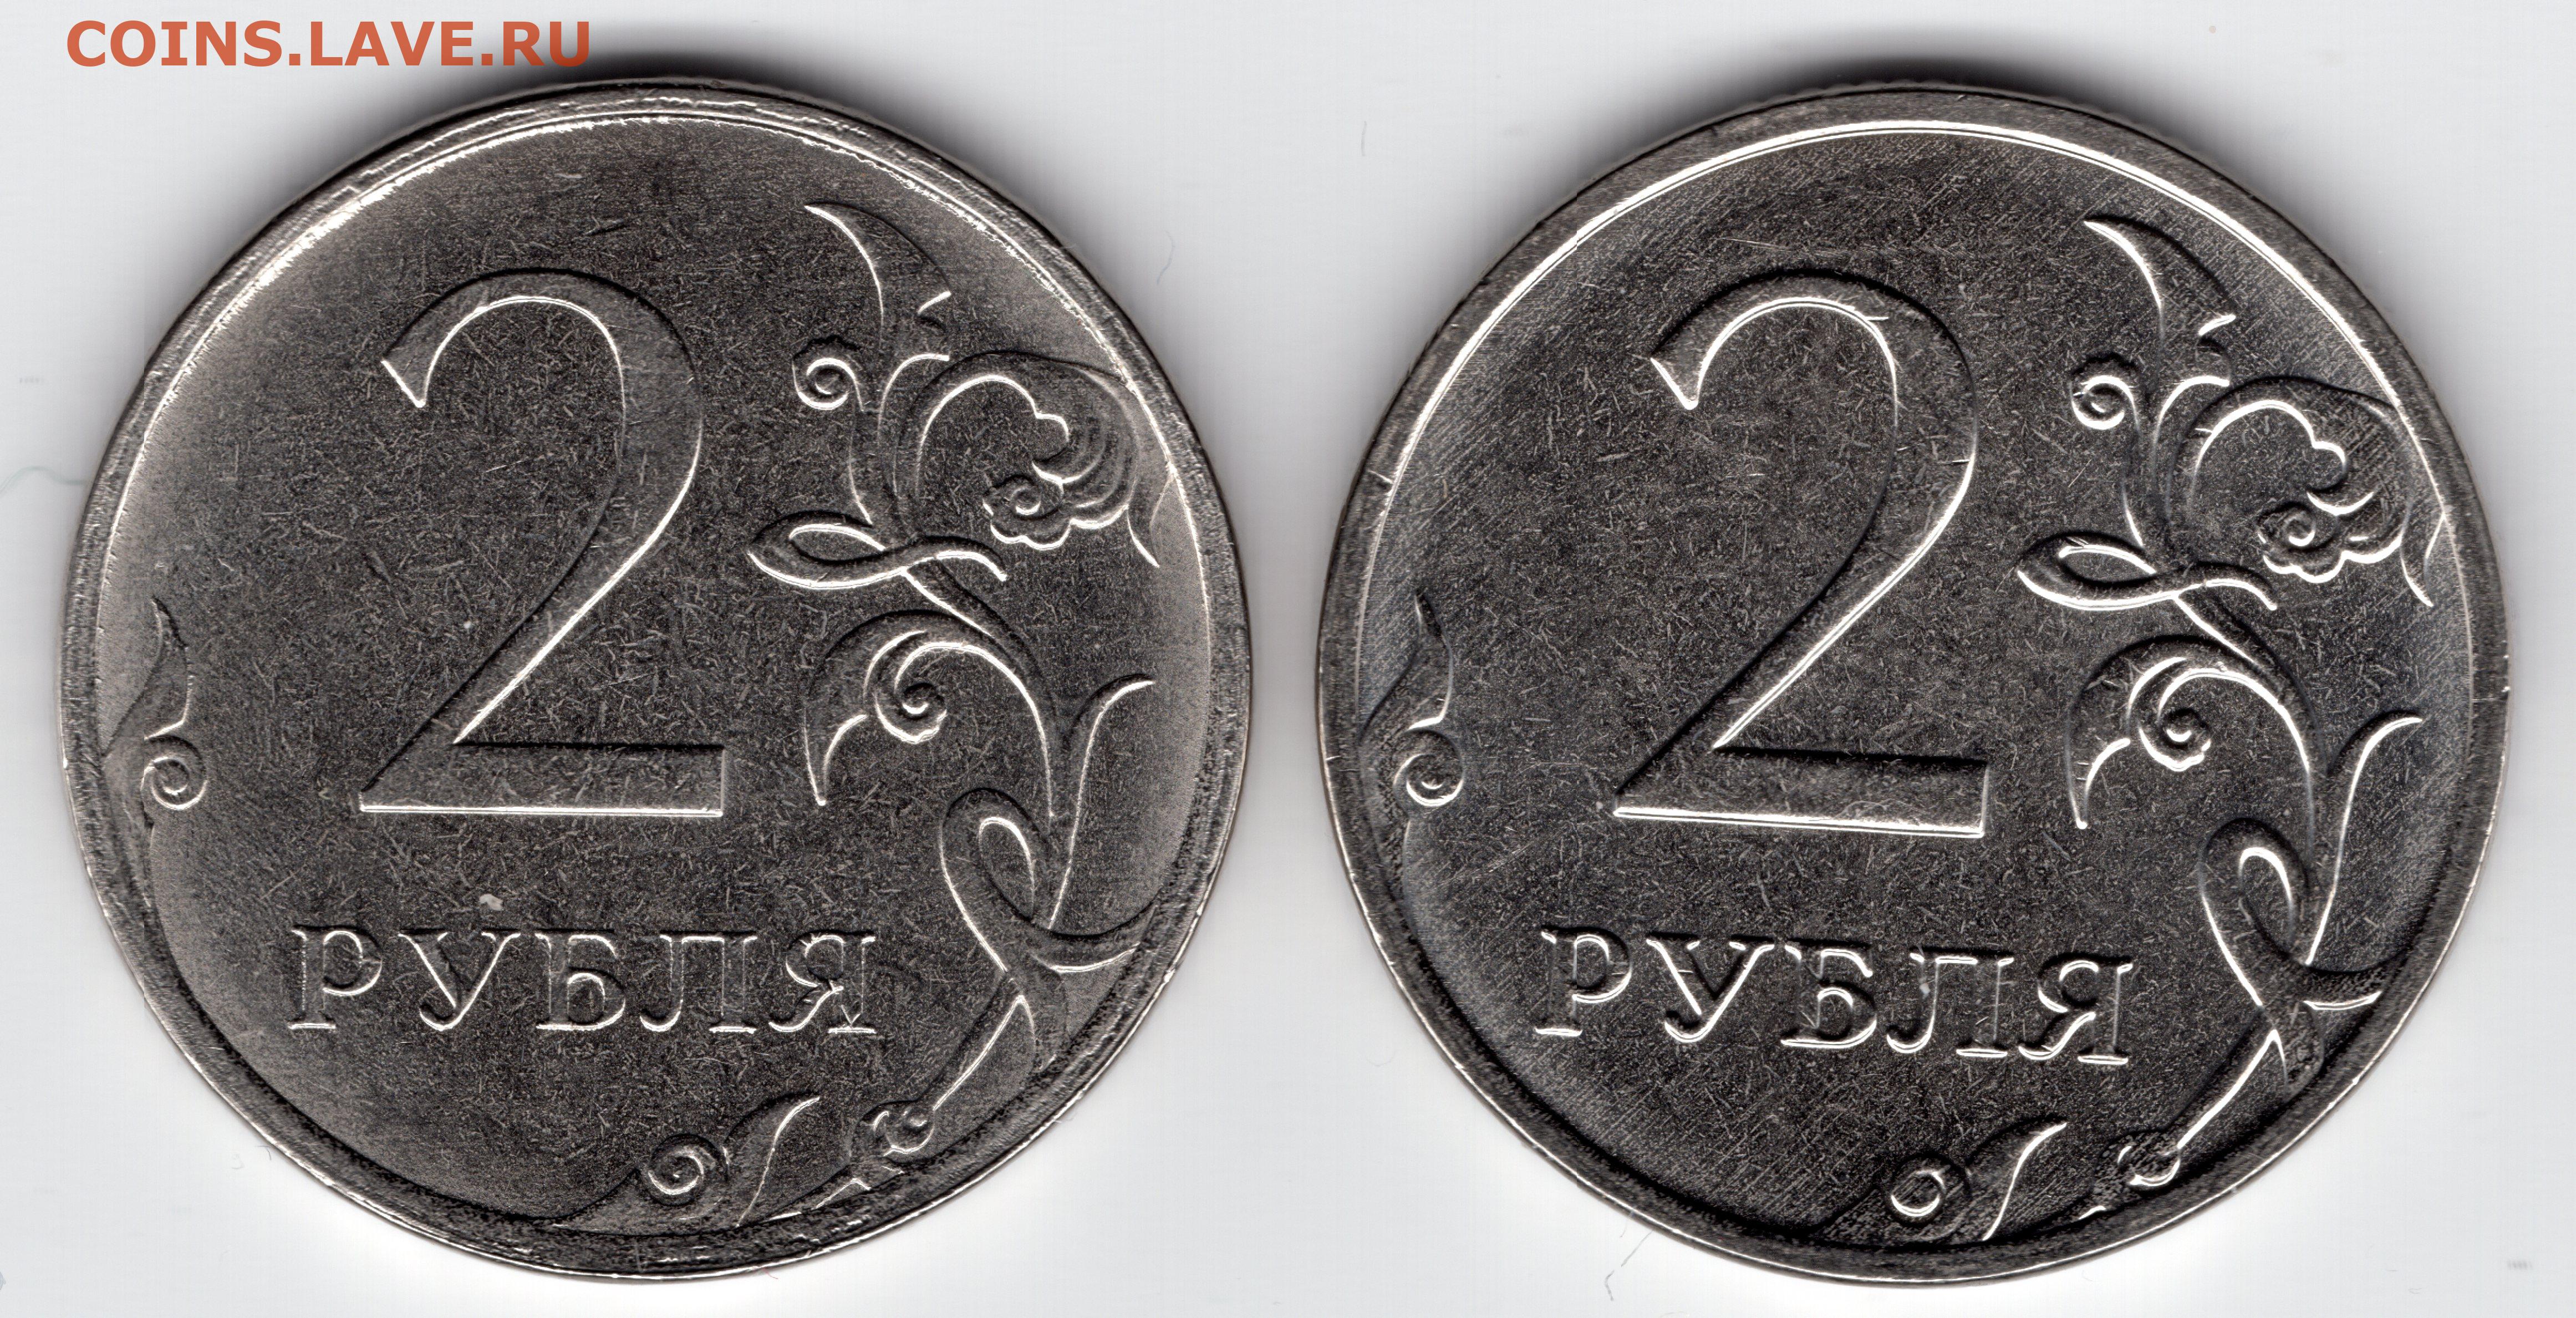 80 рублей 30. Монета два рубля. Брак монеты 5 рублей 2009г. 1 Рубль шт а шт б. 2 Рубля 2012 с браком.